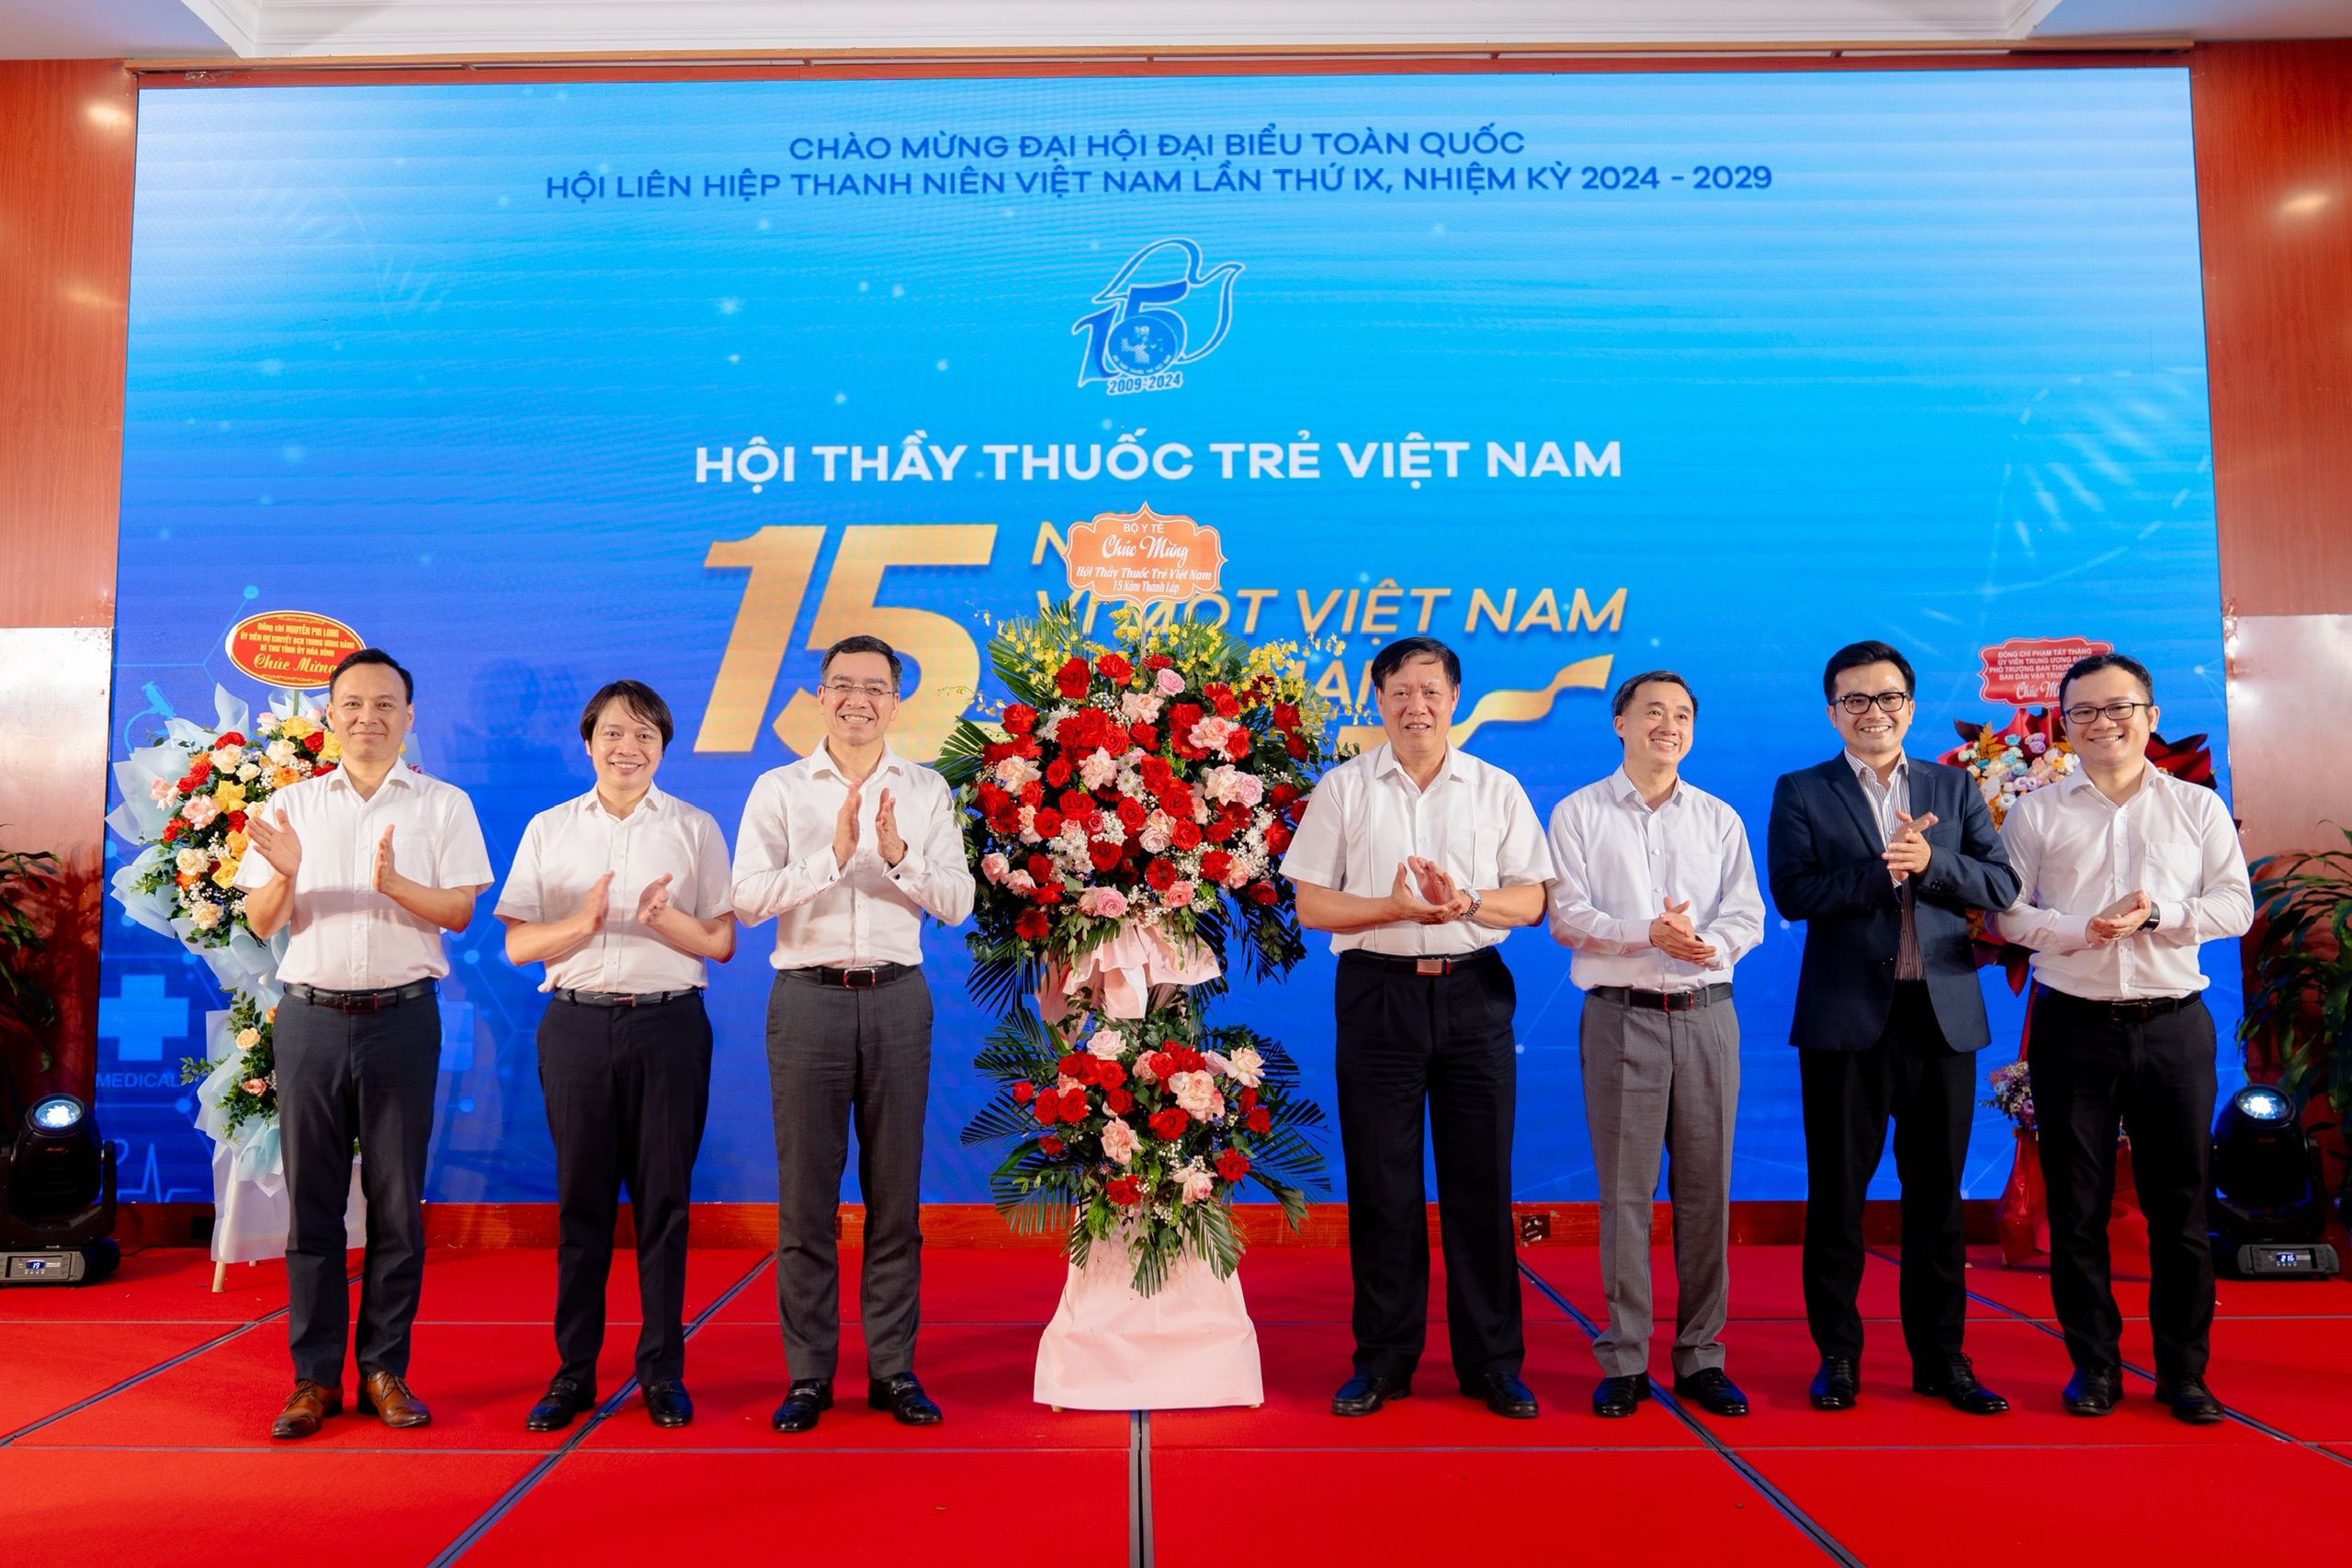 Thứ trưởng Bộ Y tế: Hội Thầy thuốc trẻ Việt Nam có nhiều đóng góp trong chăm sóc sức khỏe nhân dân- Ảnh 2.